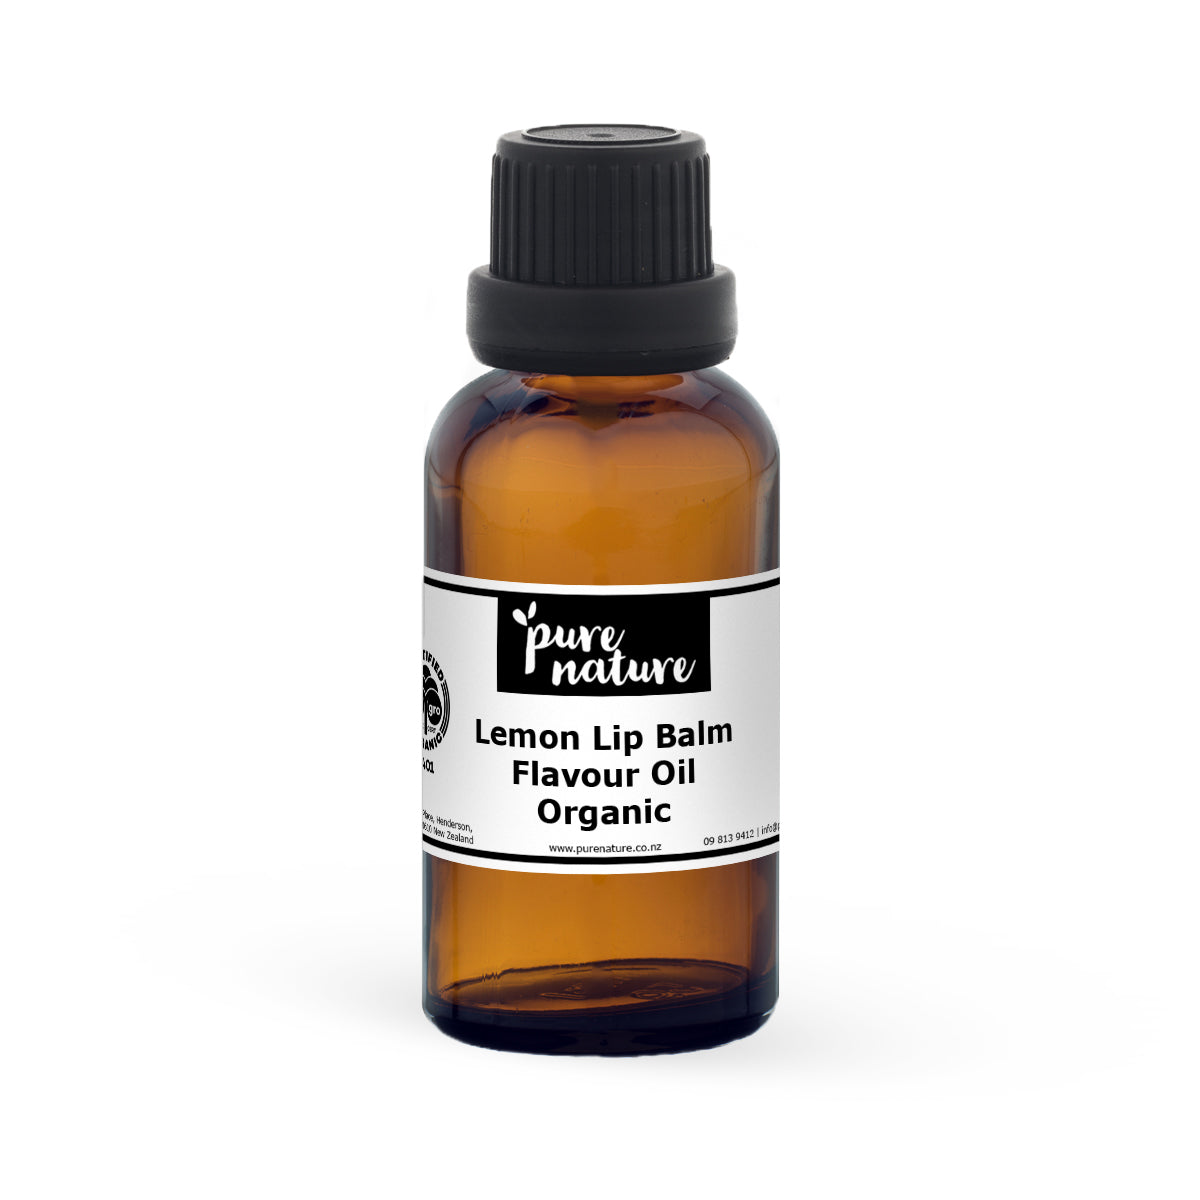 Lemon Lip Balm Flavour Oil - Organic 30ml